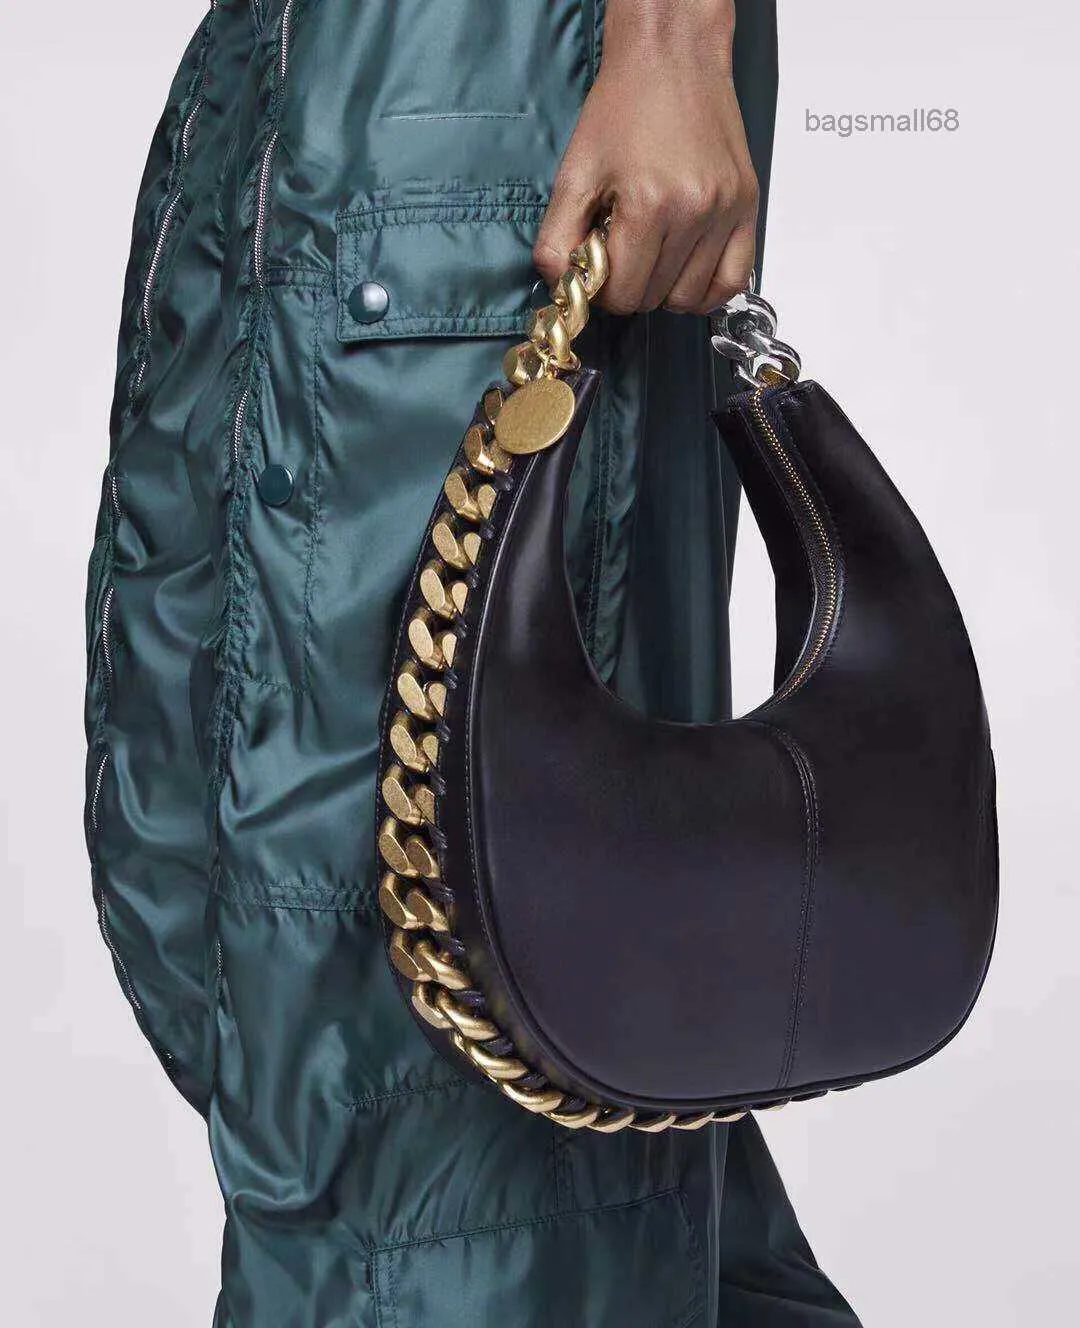 2022 nuova borsa tote firmata borsa a catena moda donna borse in pelle nappa borse da esterno con cerniera solida bagsmall68